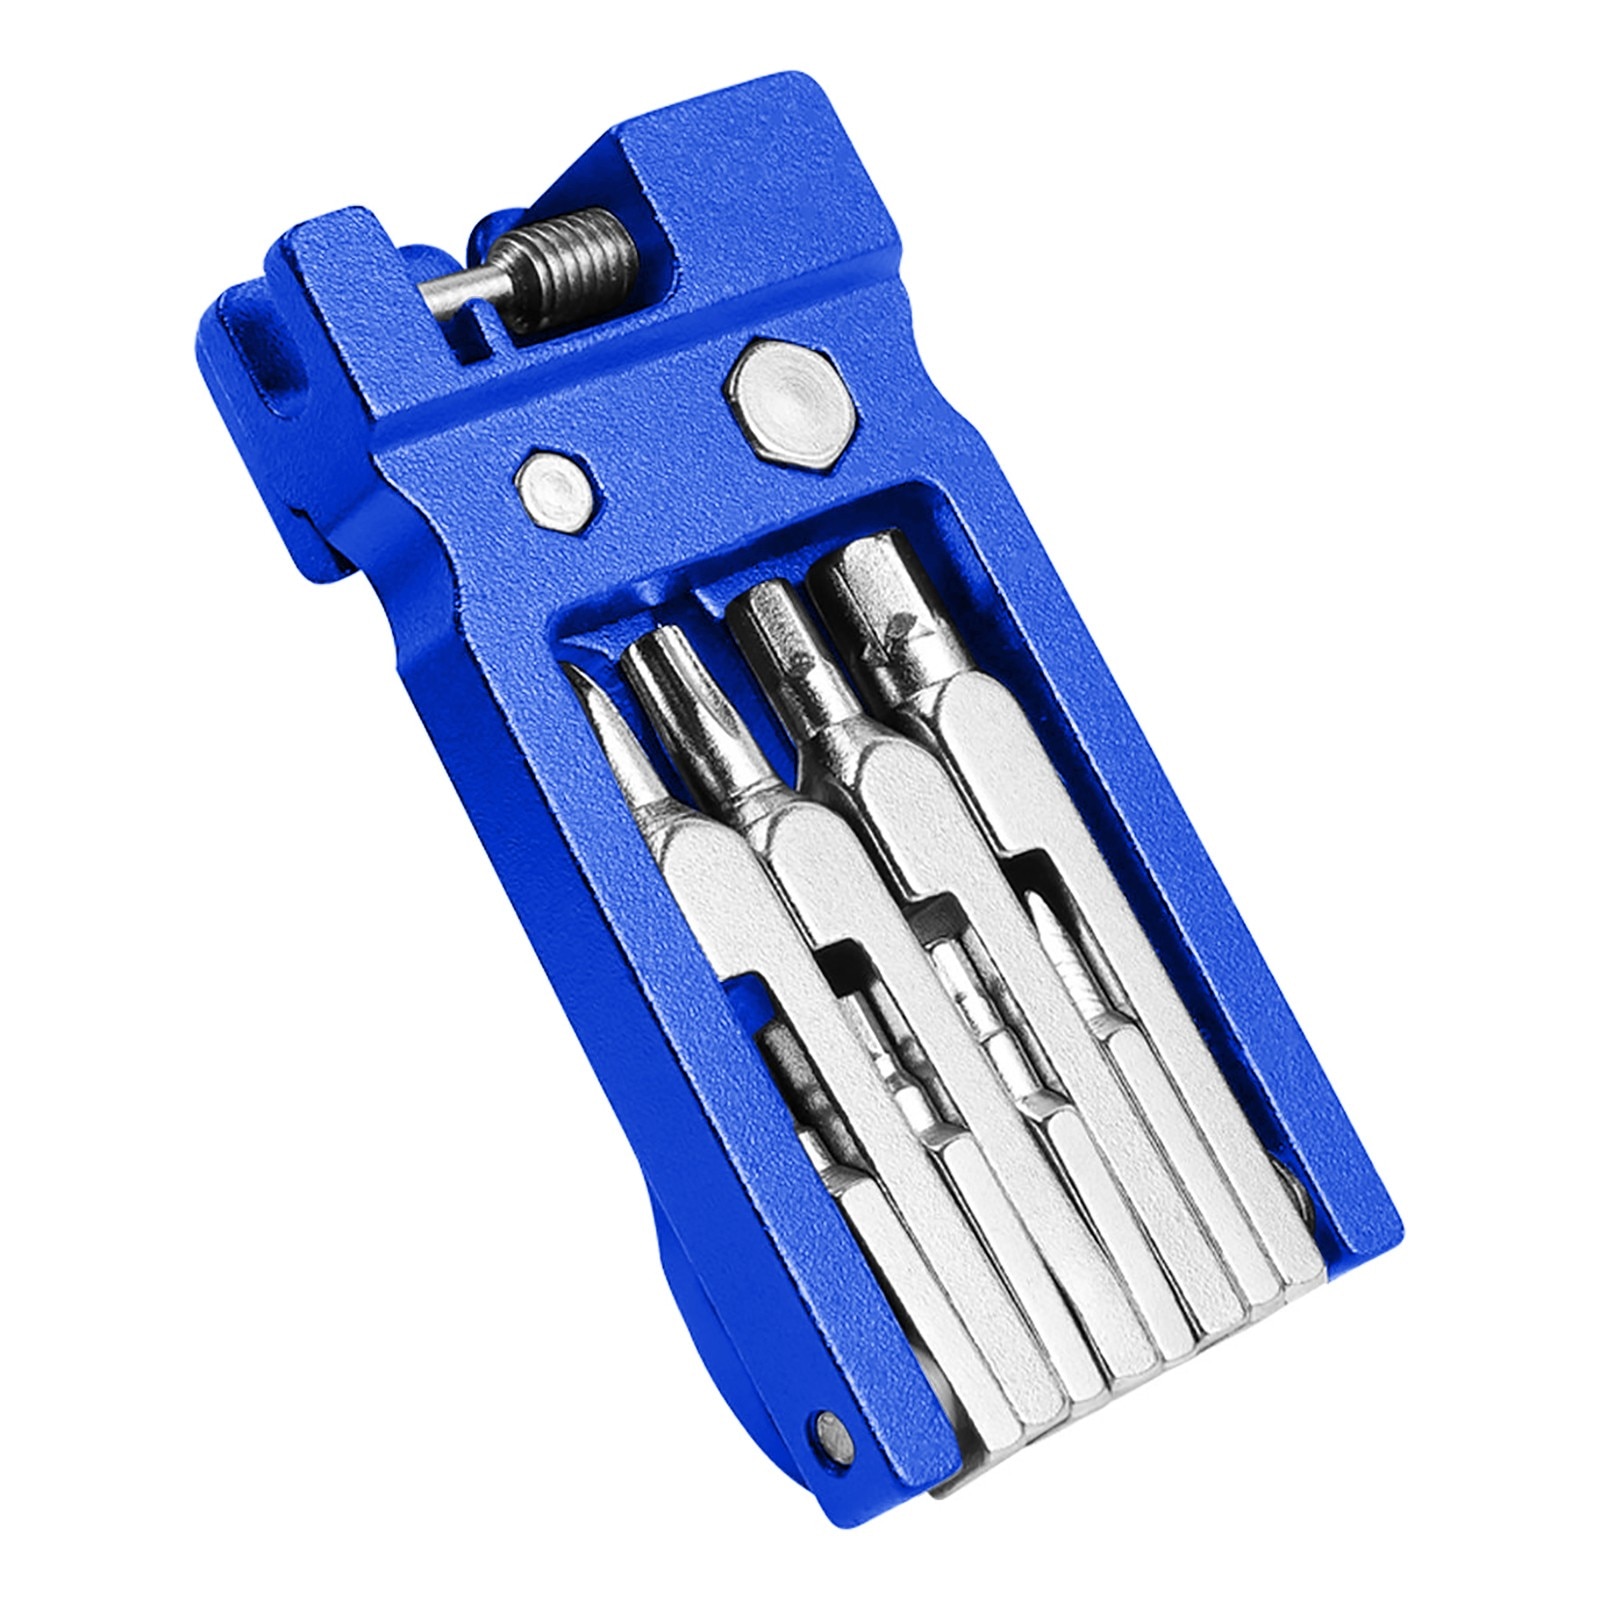 Draagbare Fiets Reparatie Tools 20-In-1 Multifunctionele Cyclus Fiets Reparatie Kit Fiets Reparatie Tool Outdoor reparatie Accessoires #35